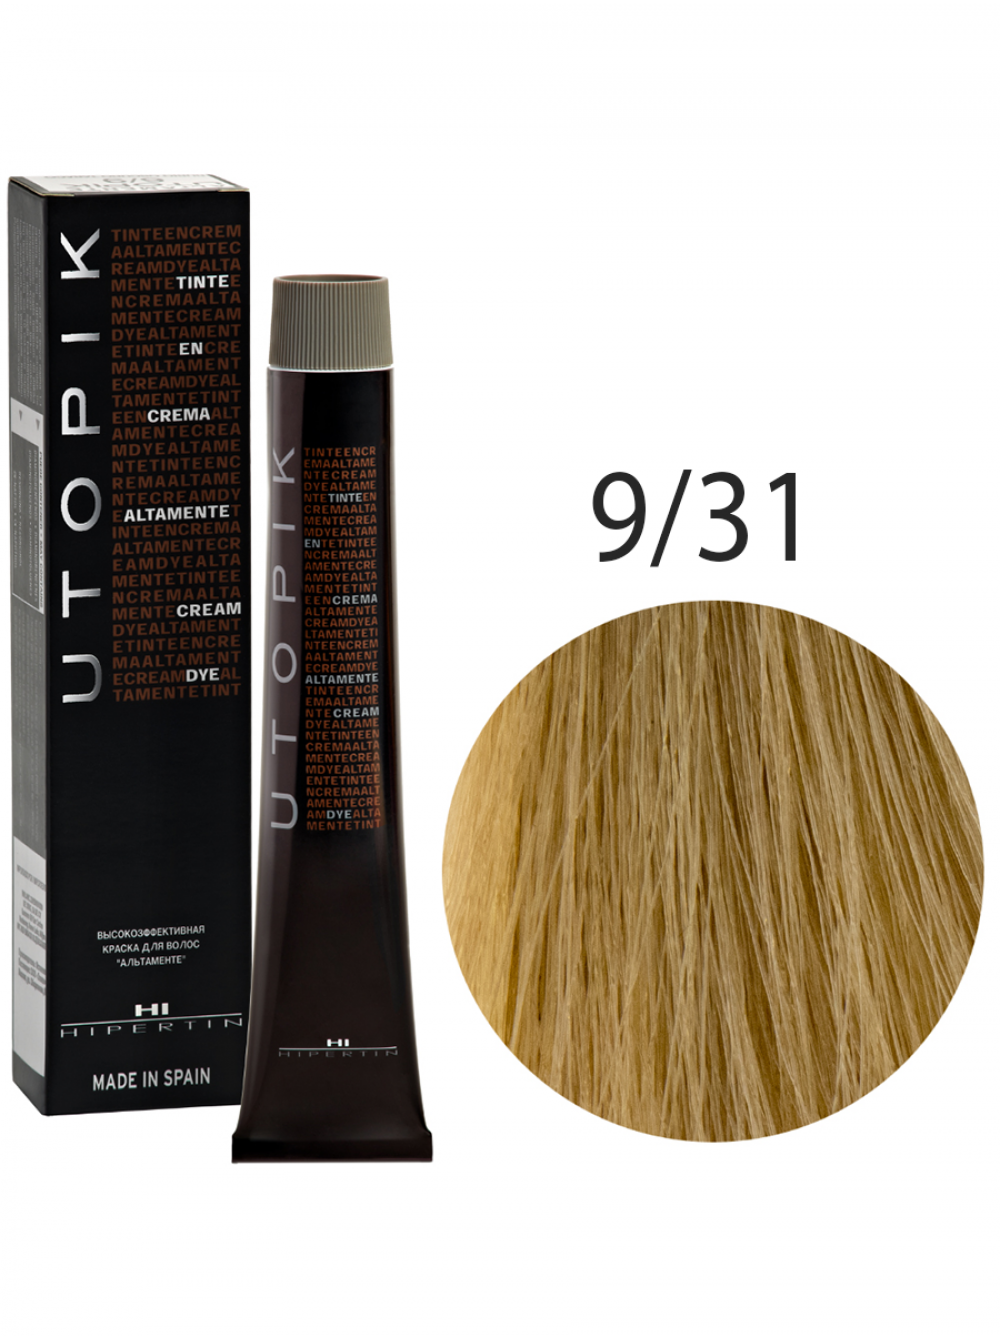 Краска для волос Utopik Altamente 9/31U, очень светлый блондин золотисто-пепельный, 60 мл